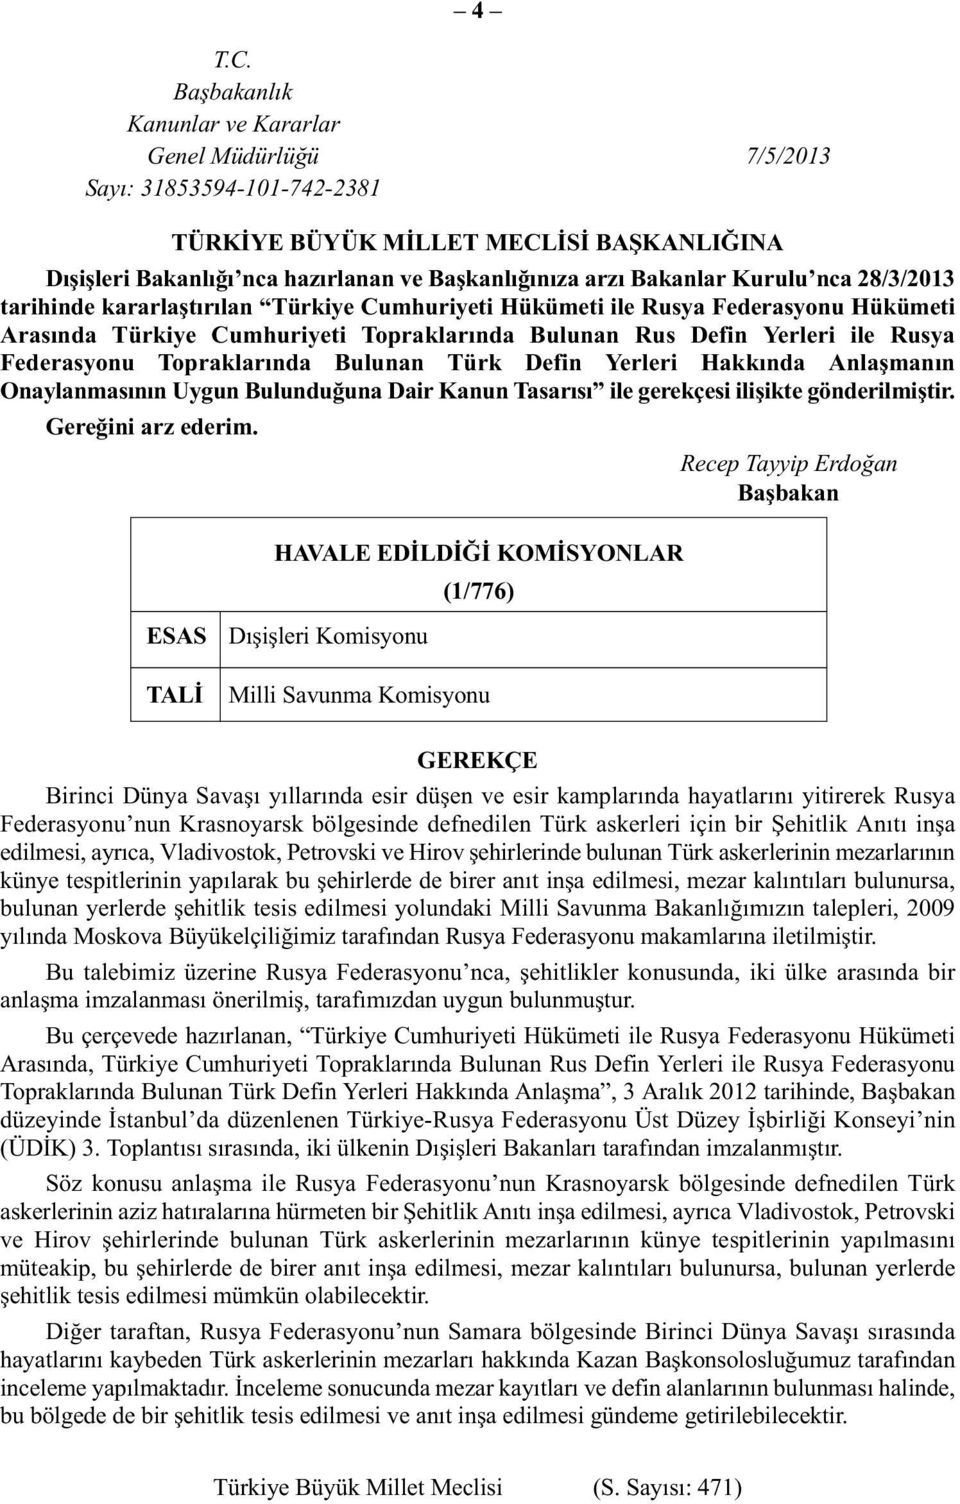 Kurulu nca 28/3/2013 tarihinde kararlaştırılan Türkiye Cumhuriyeti Hükümeti ile Rusya Federasyonu Hükümeti Arasında Türkiye Cumhuriyeti Topraklarında Bulunan Rus Defin Yerleri ile Rusya Federasyonu